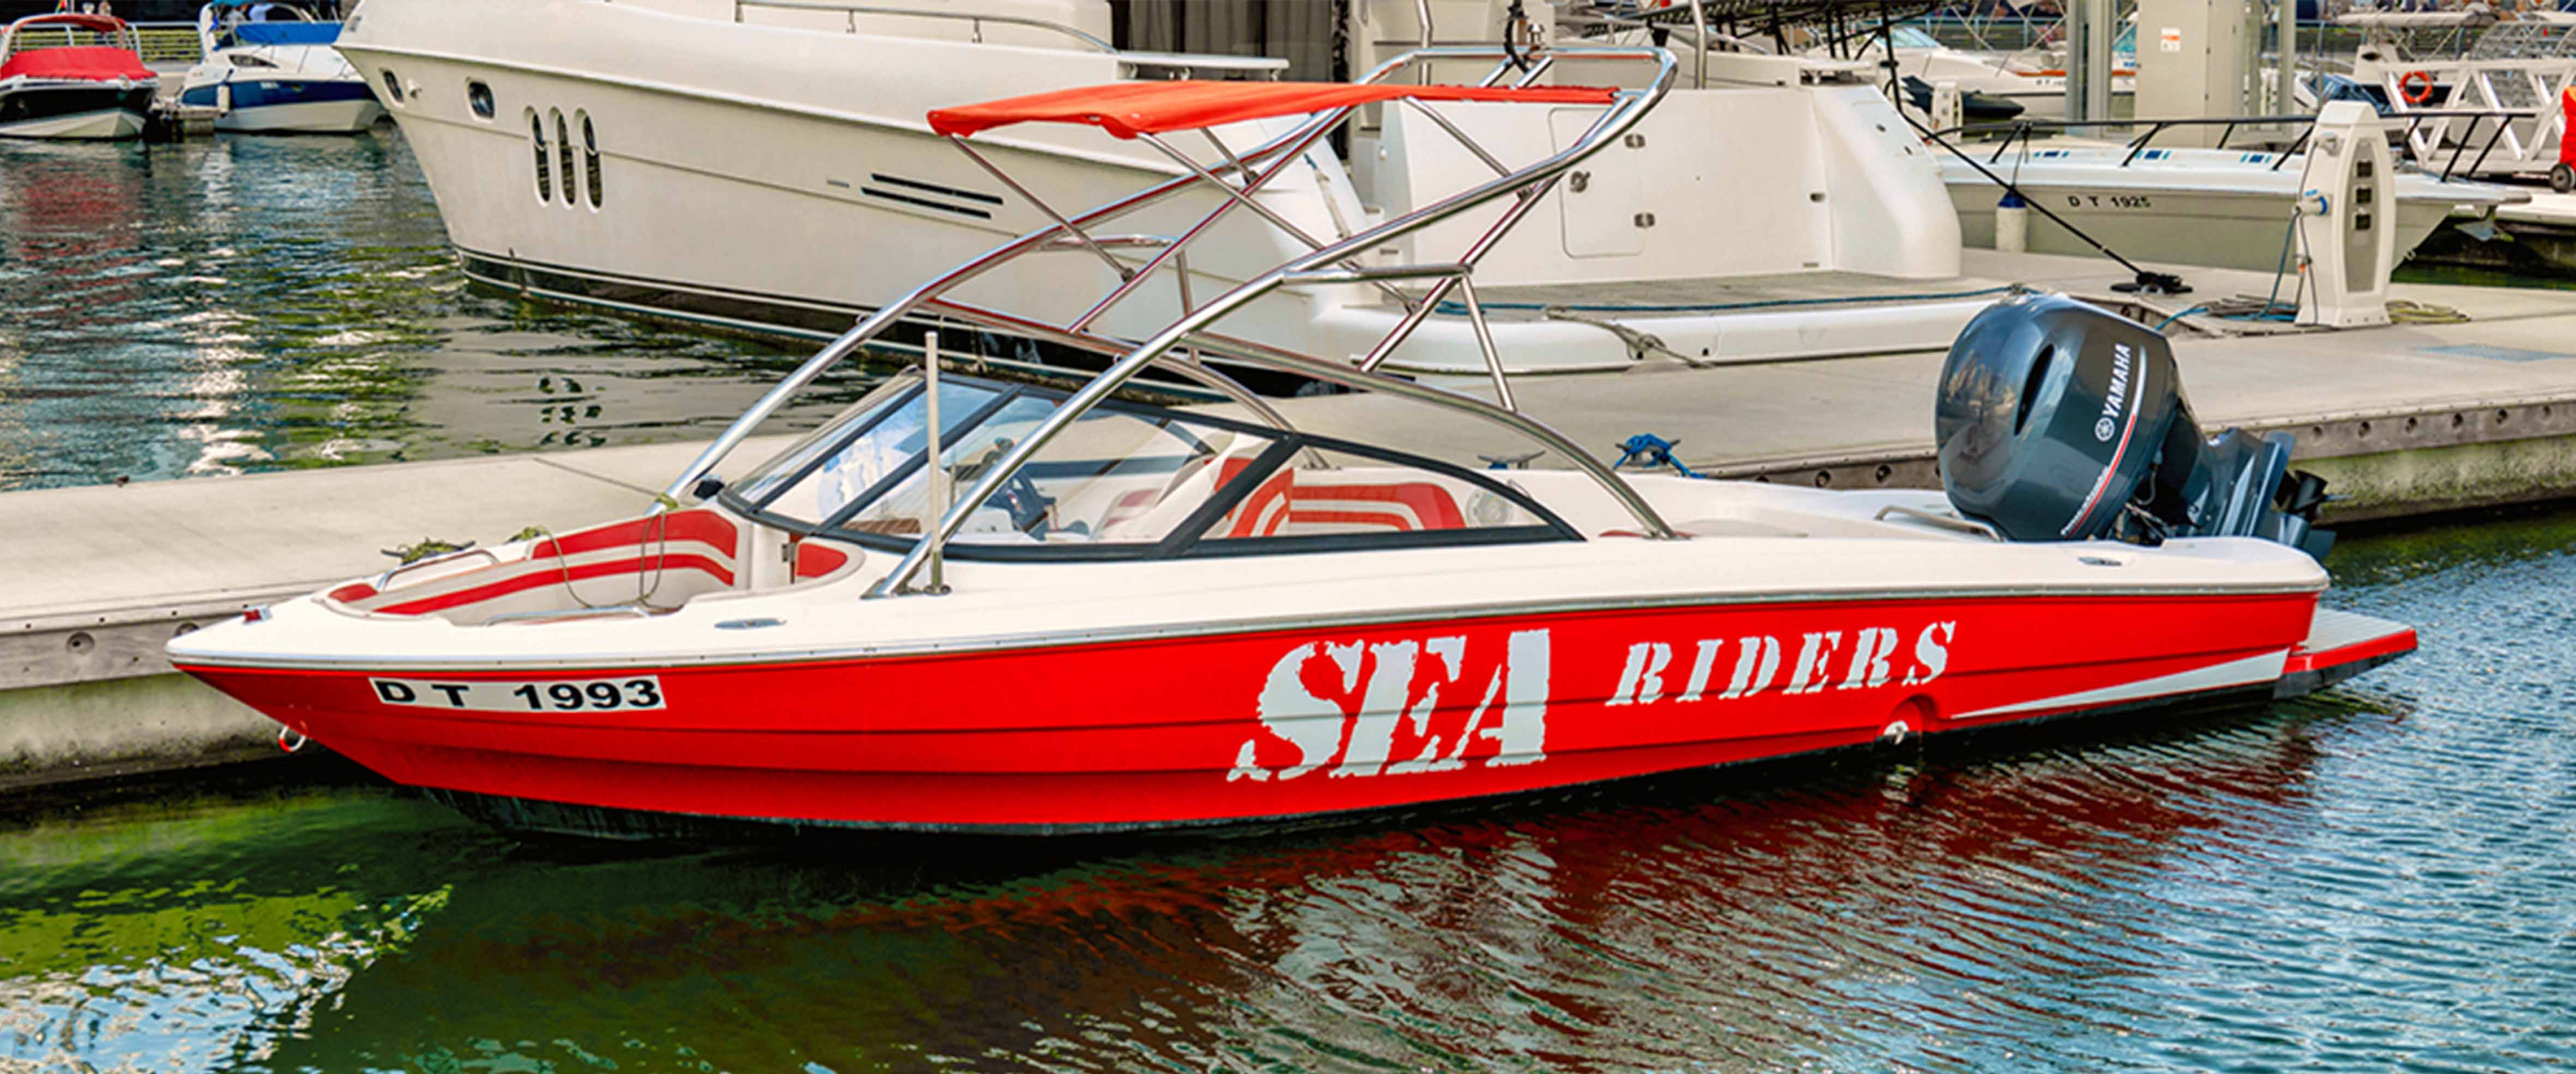 Sea Riders Boat